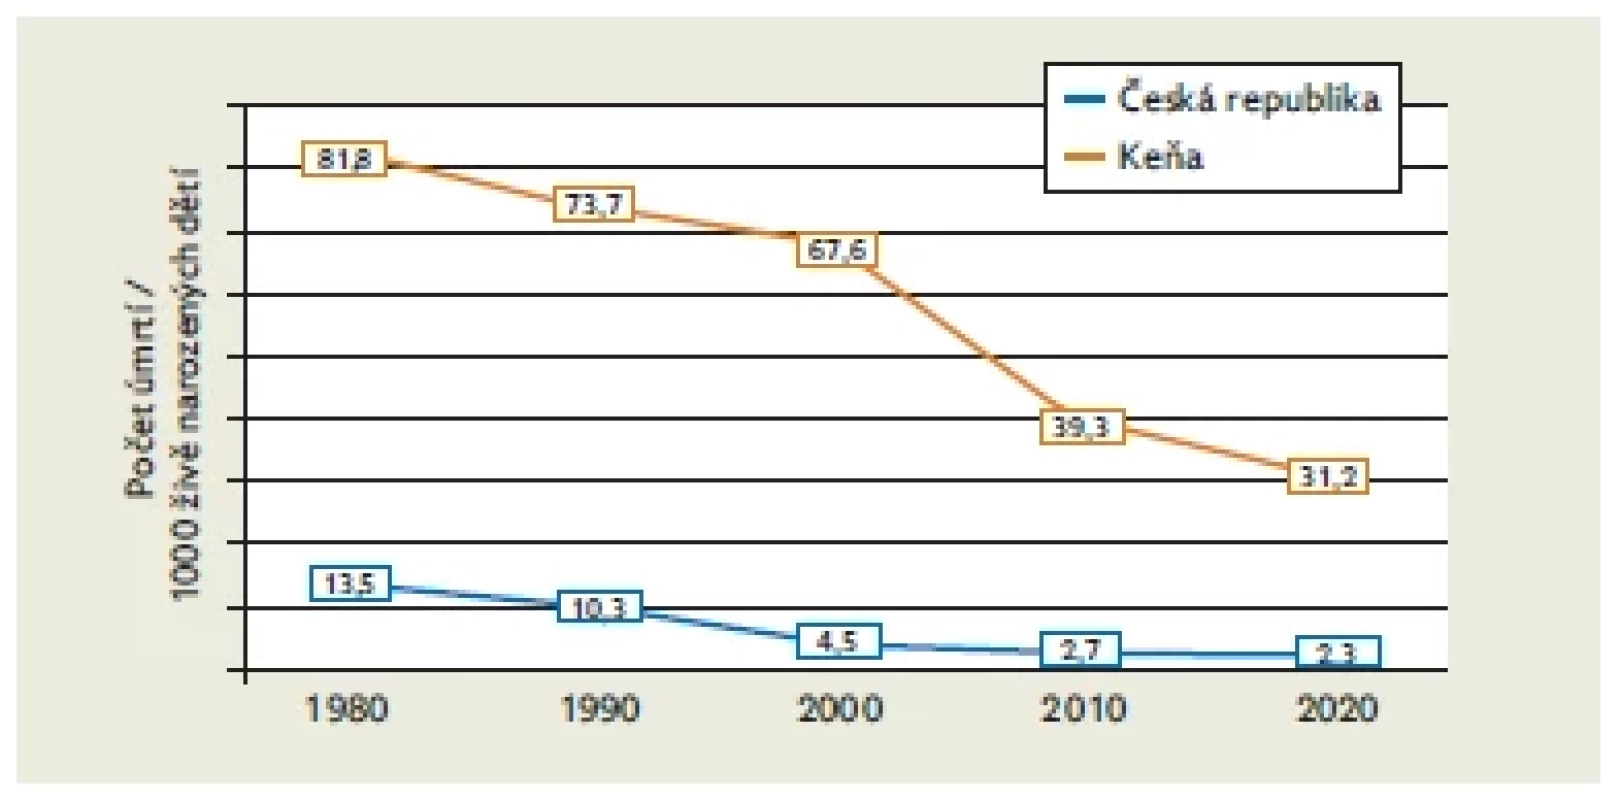 Kojenecká úmrtnost v Keni a České republice v letech
1970–2020